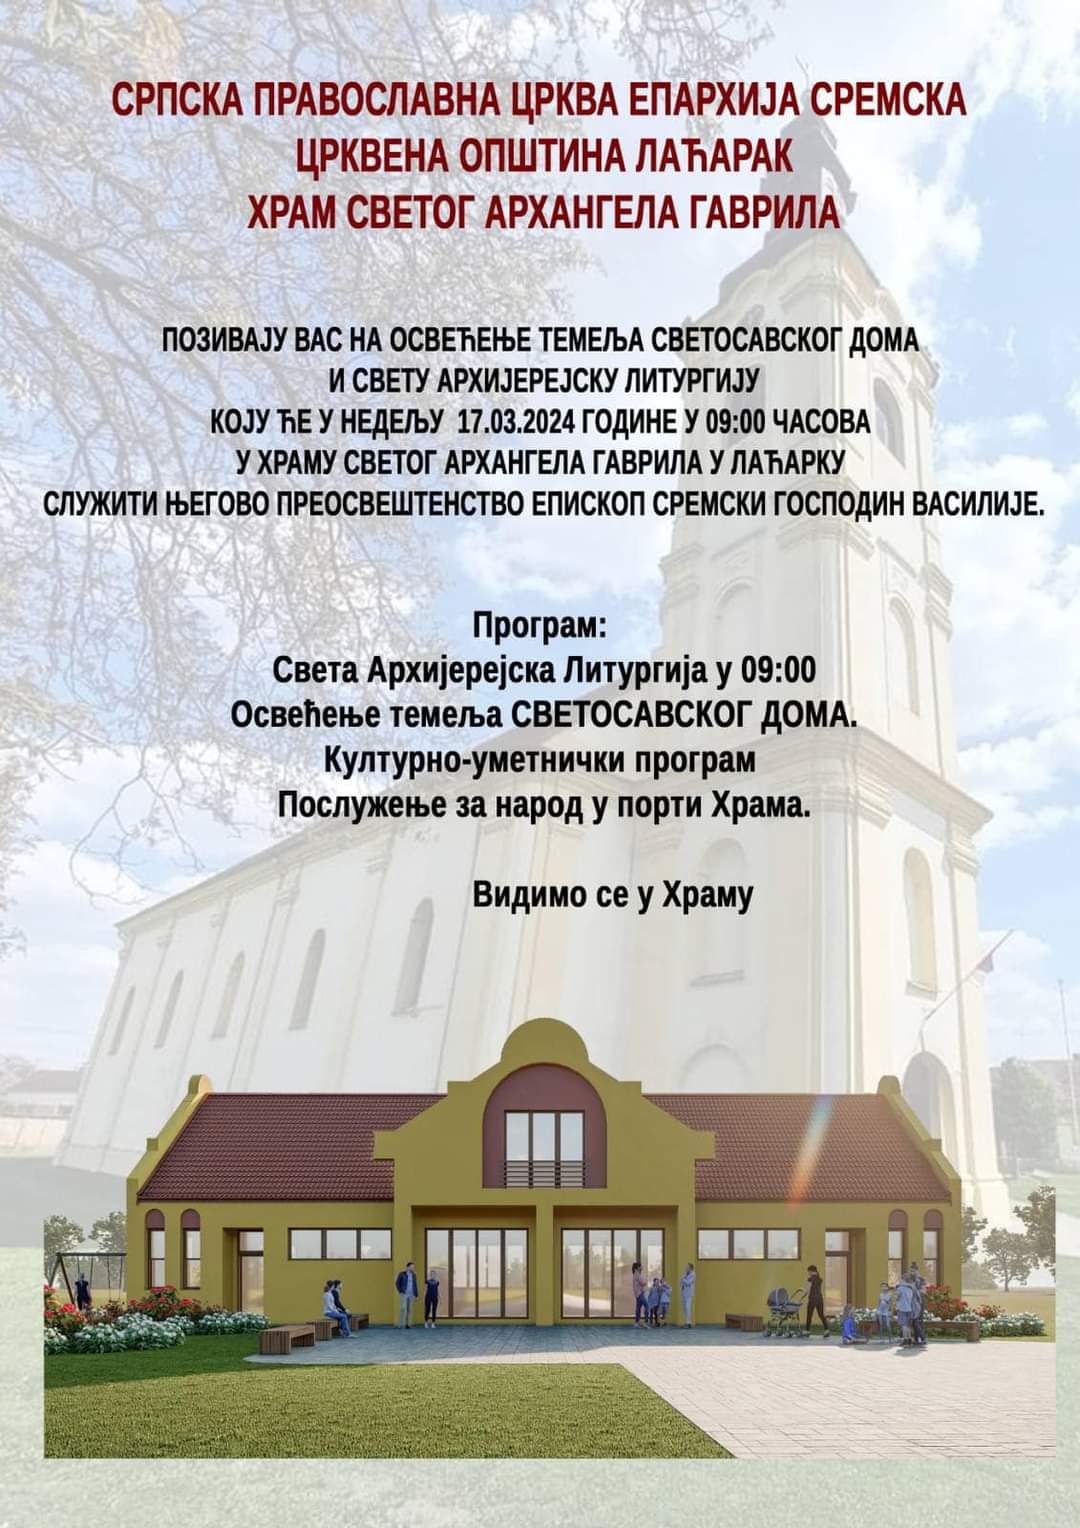 Најава: Света архијерејска Литургија и освећење темеља Светосавског дома у Лаћарку